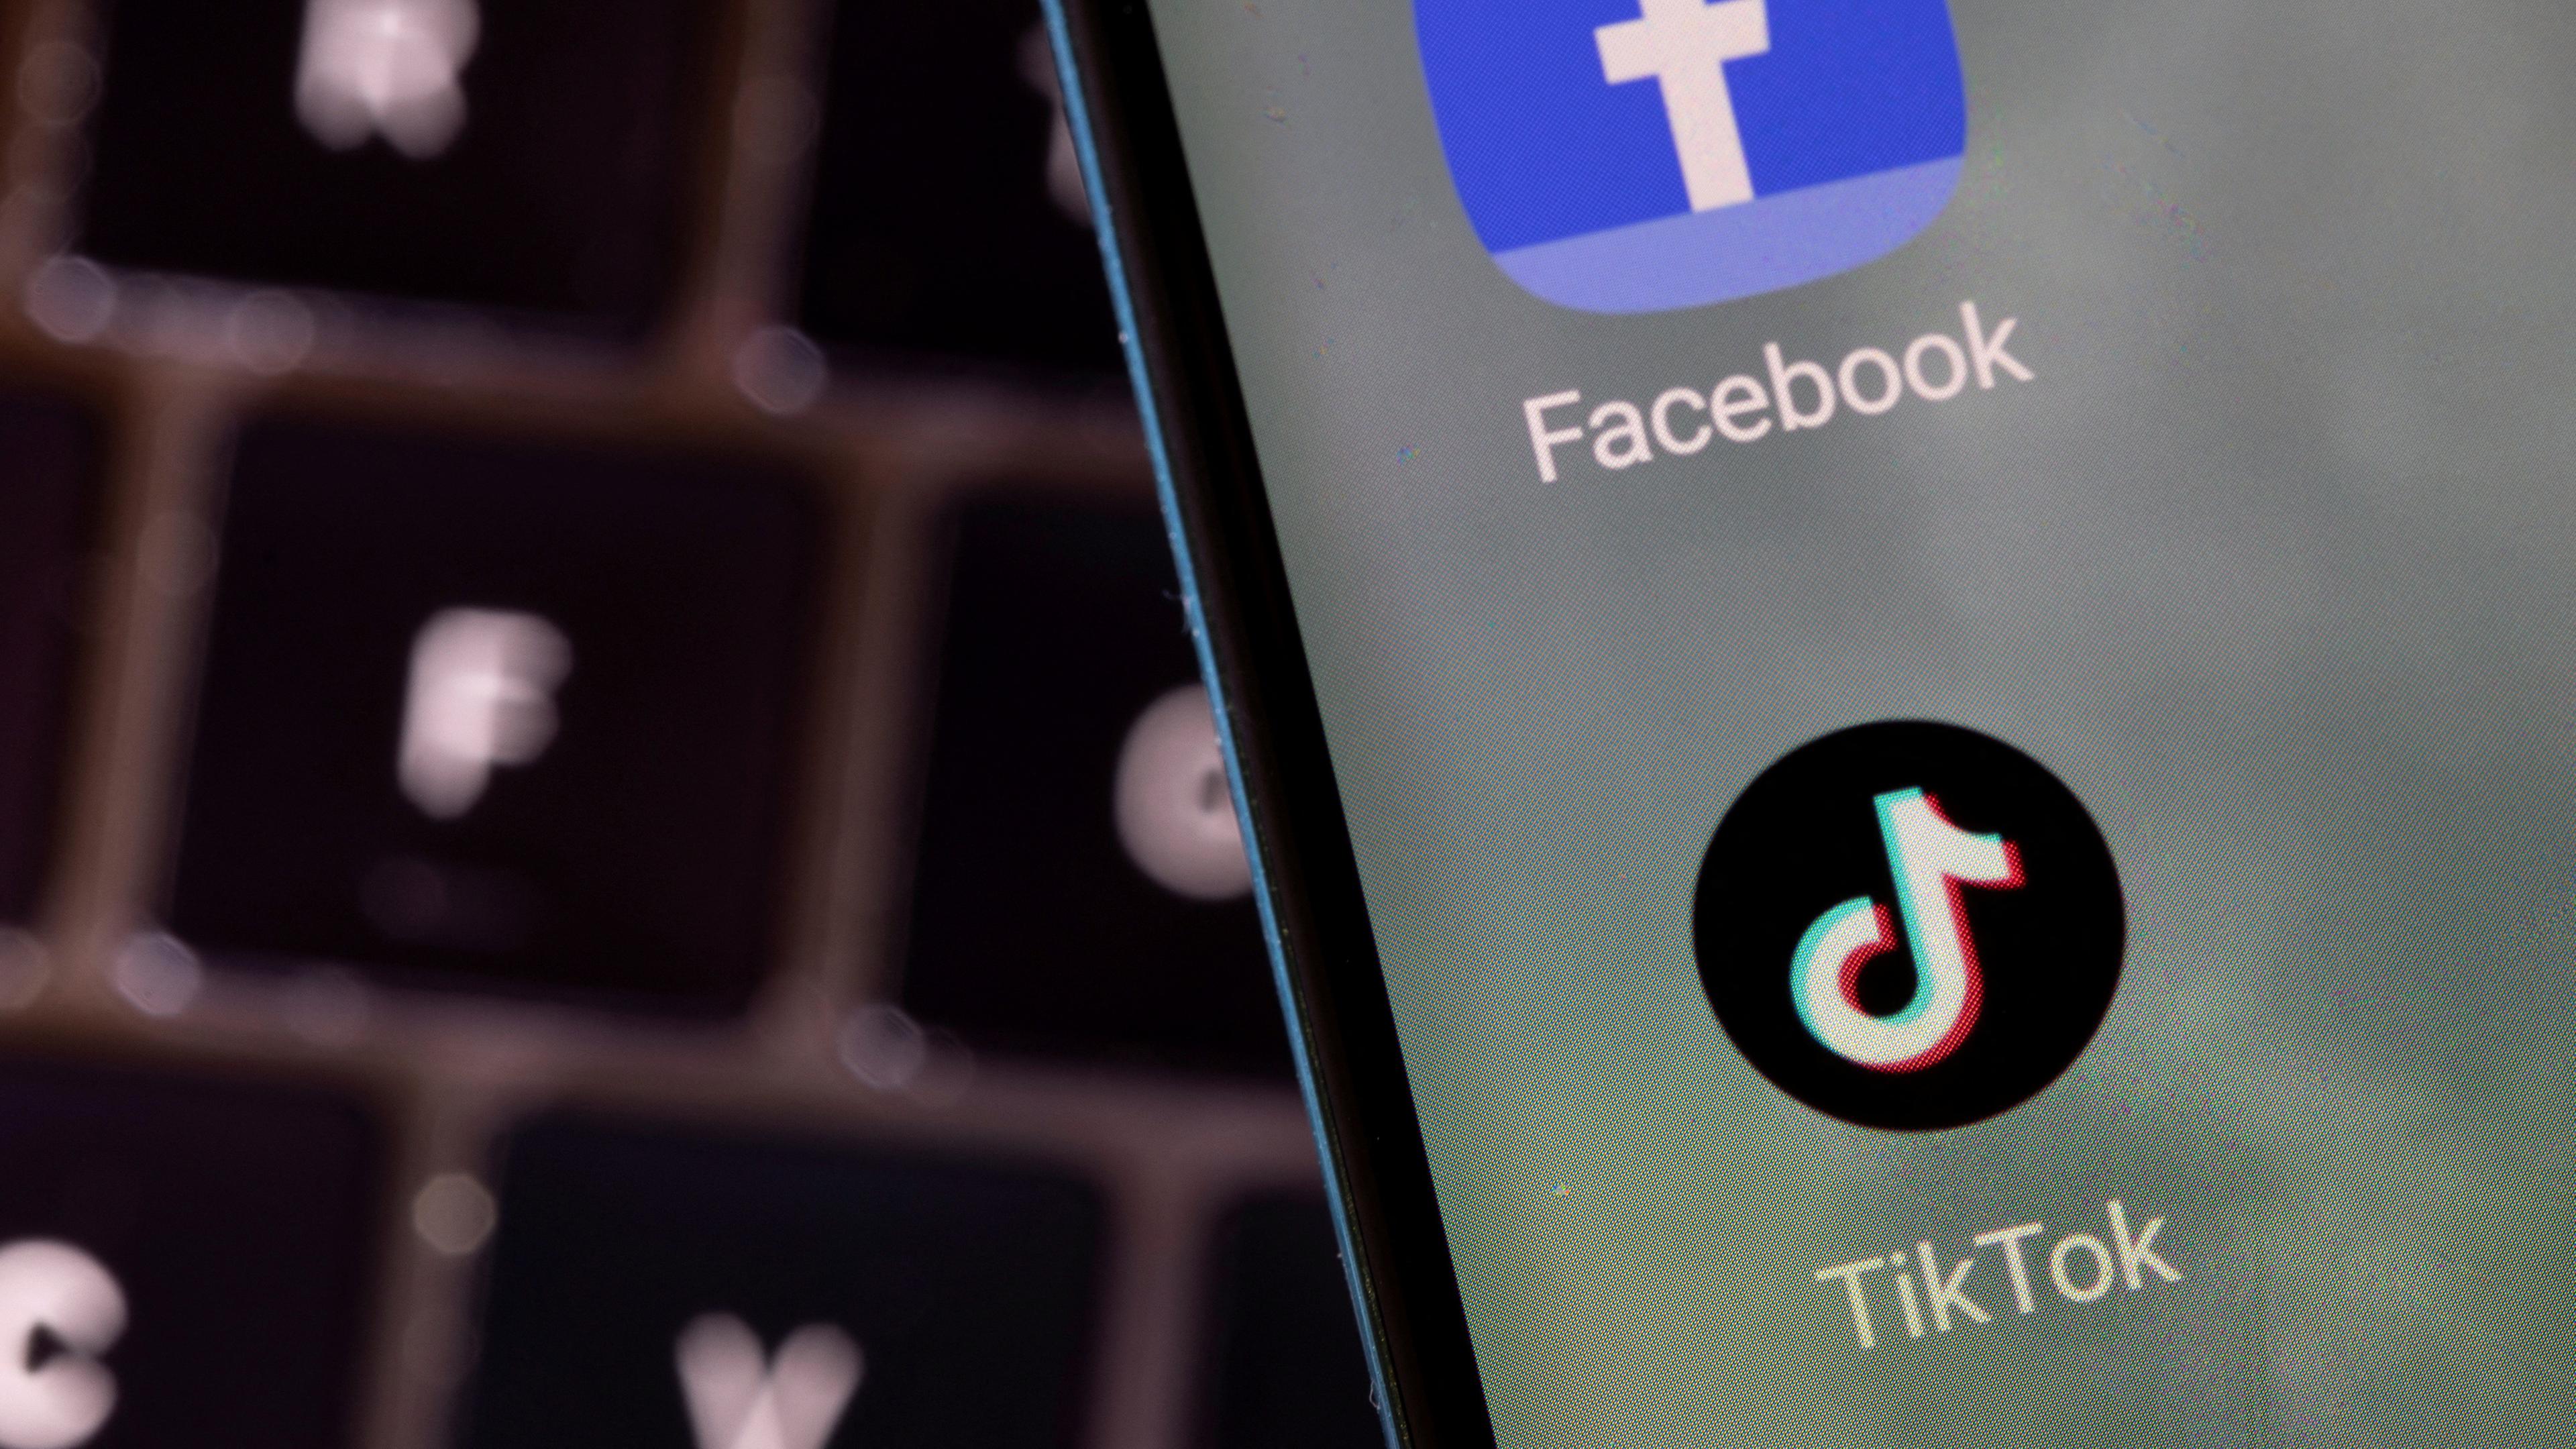 Die Apps Facebook und TikTok auf einem Smartphone-Bildschirm.